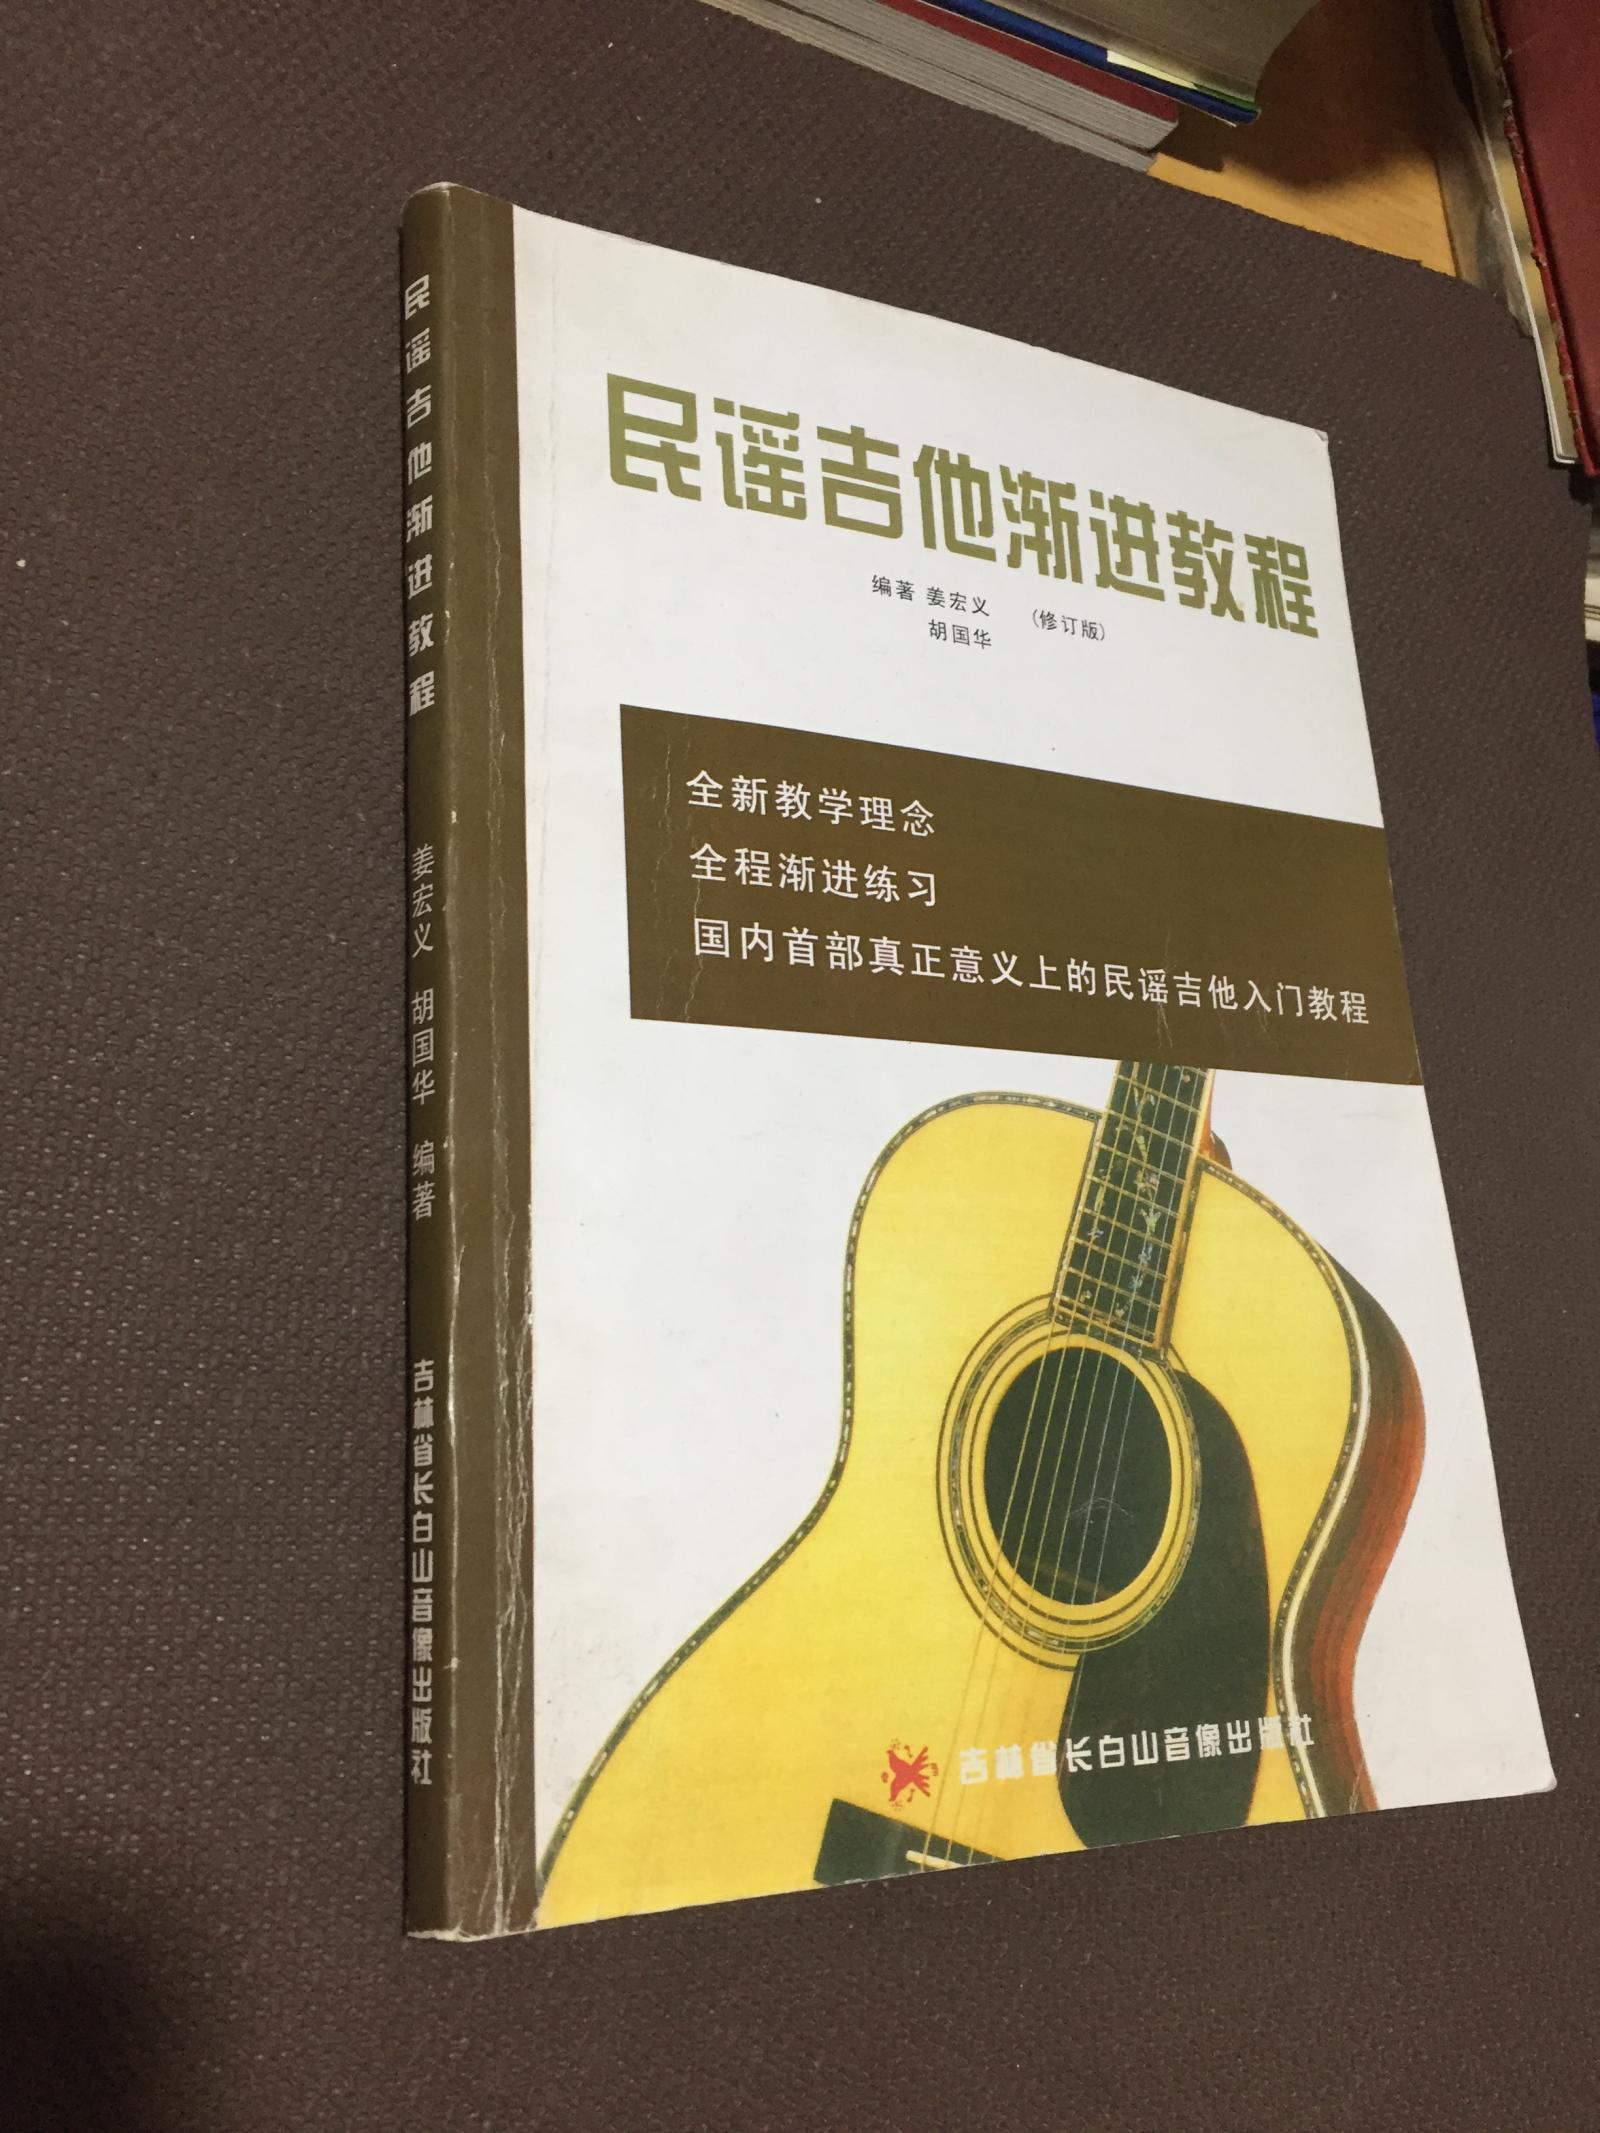 民谣吉他渐进教程  (修订版)